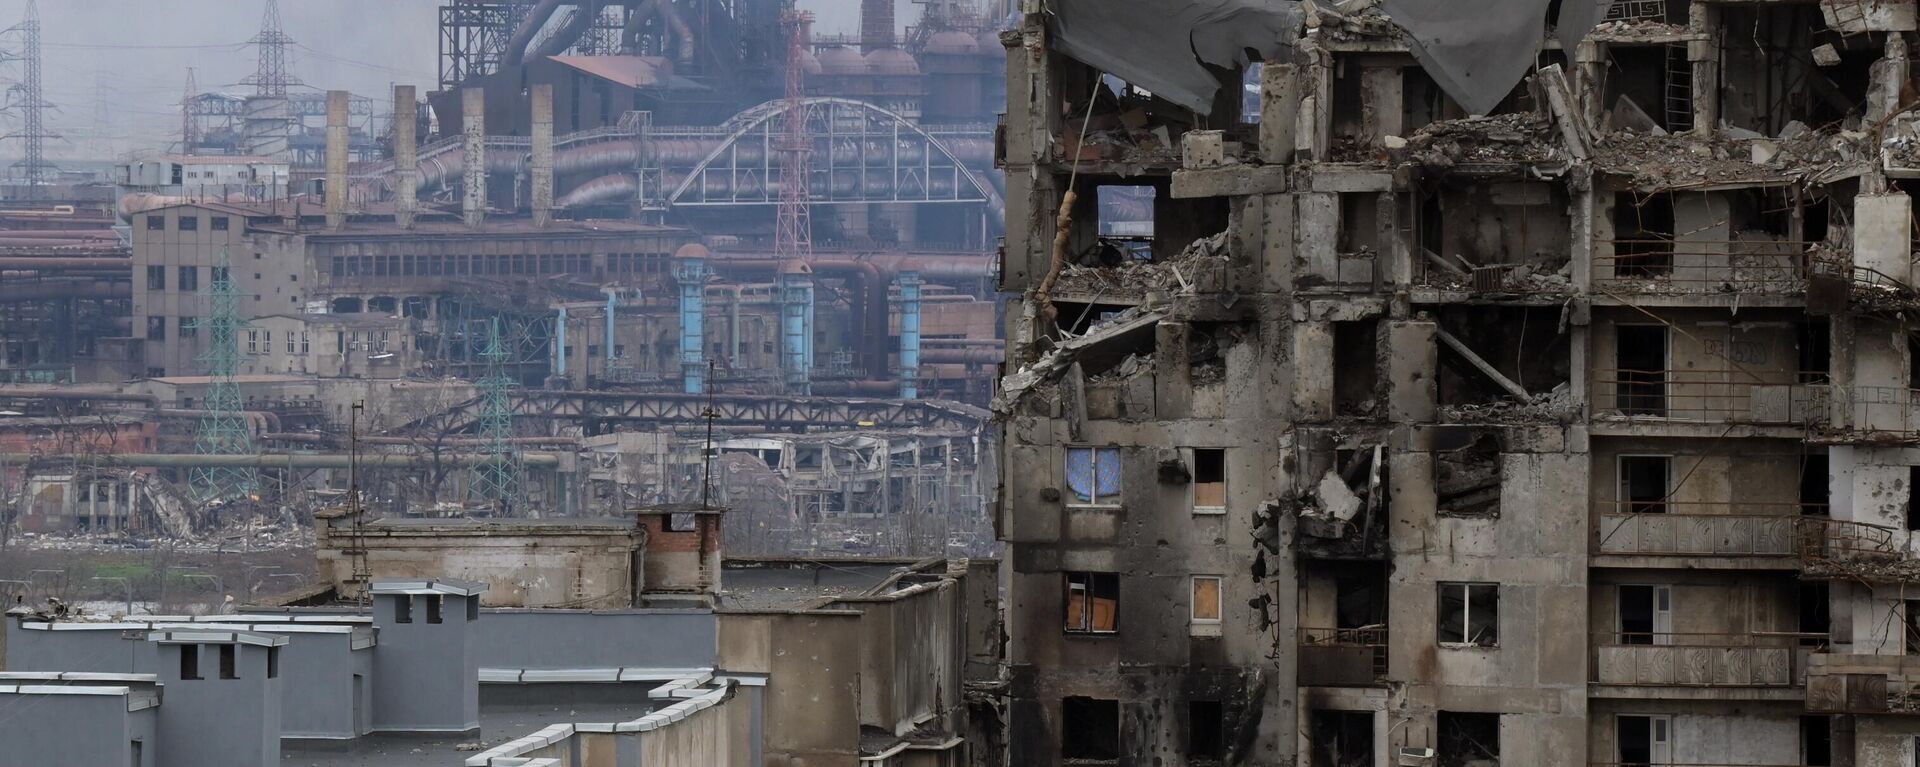 Một ngôi nhà bị phá hủy gần nhà máy Azovstal ở Mariupol. - Sputnik Việt Nam, 1920, 02.05.2022